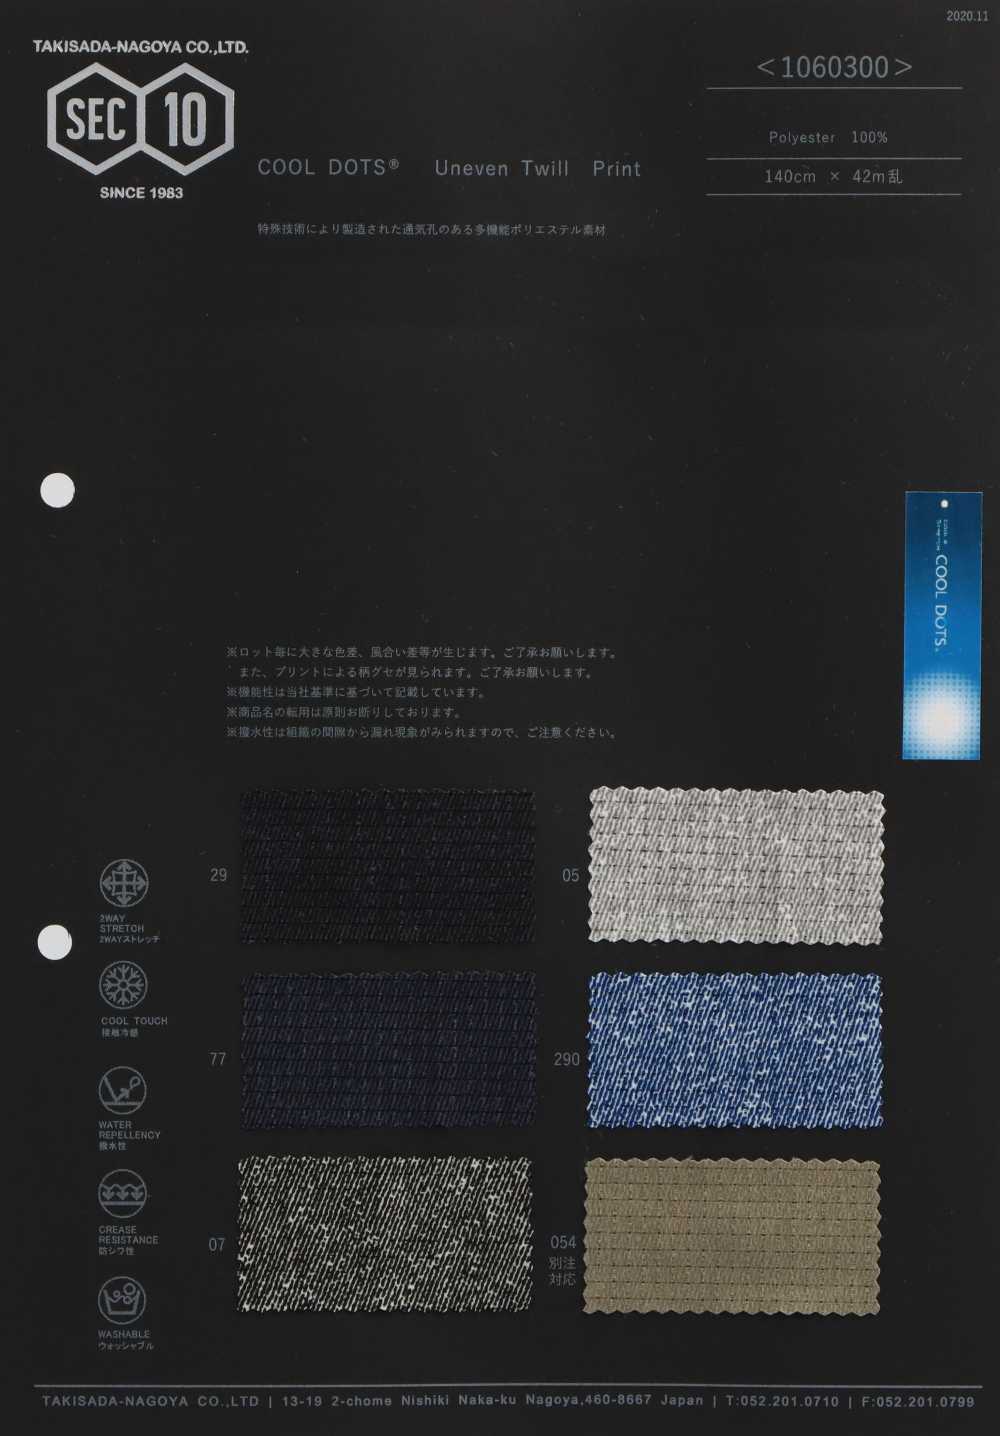 1060300 COOLDOTS Twill Print[Textile / Fabric] Takisada Nagoya